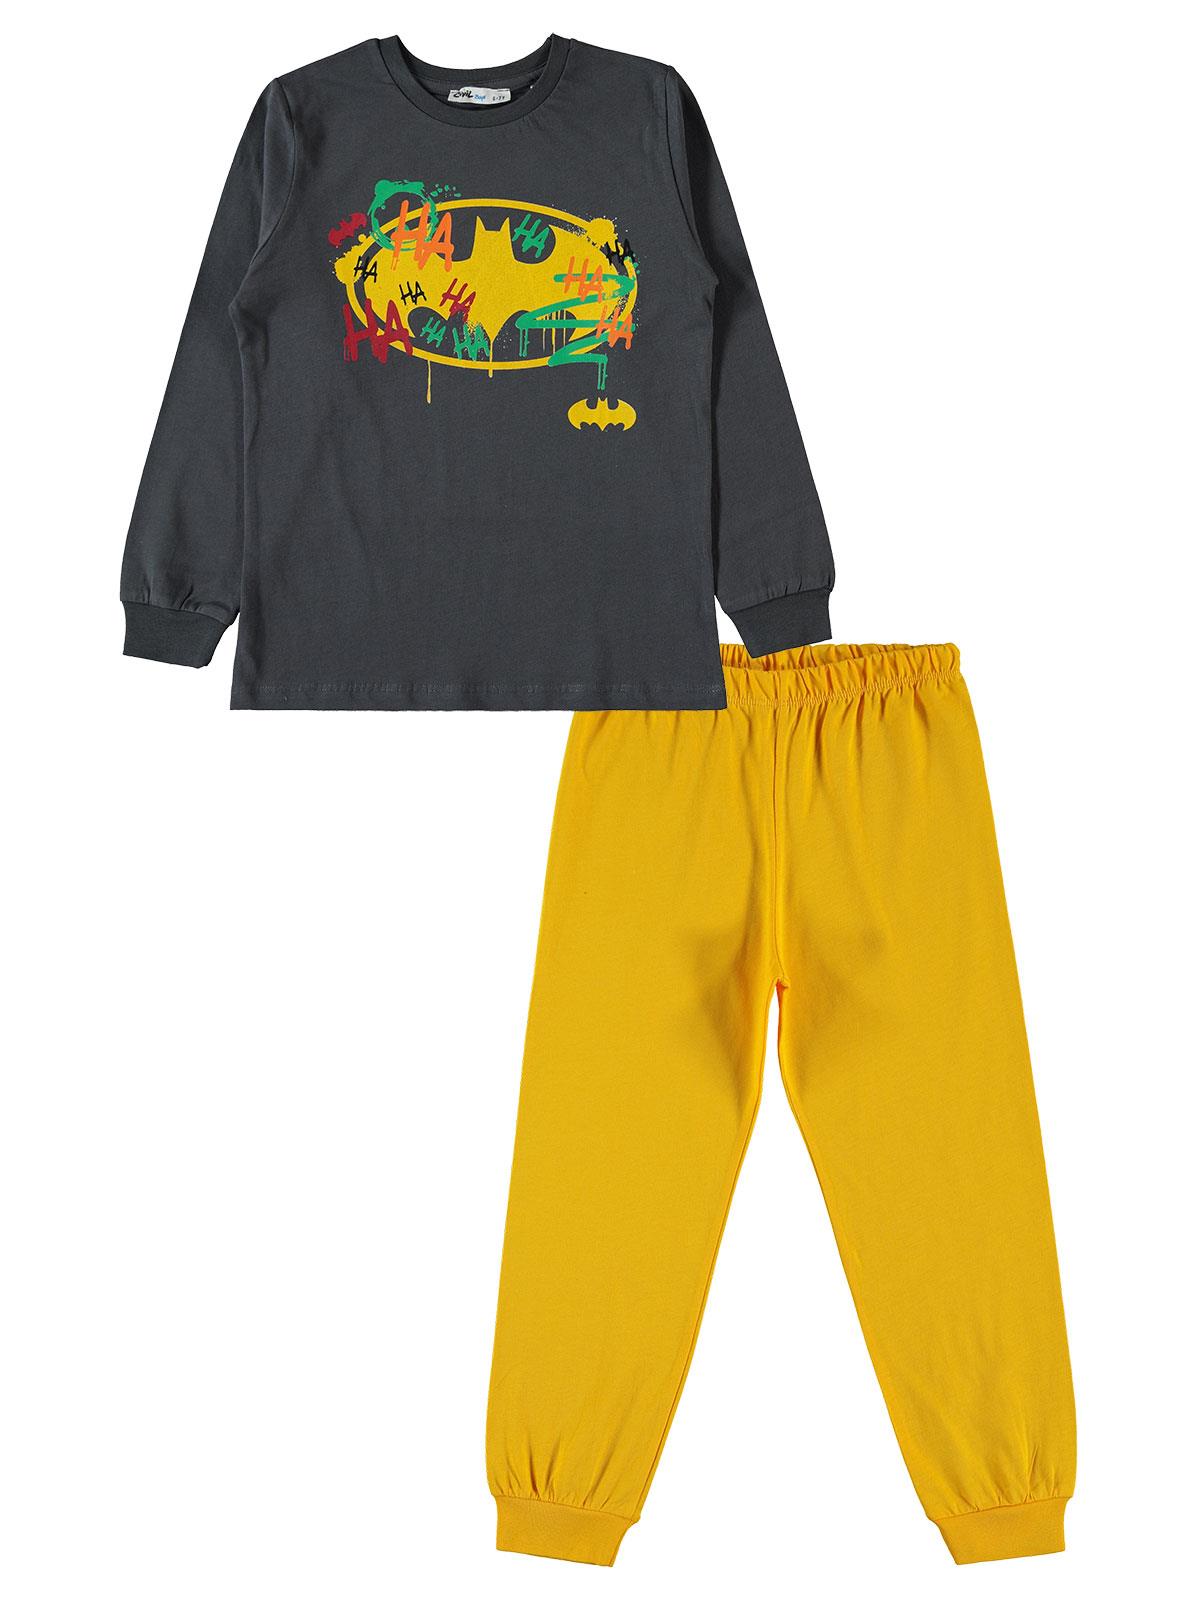 Batman Erkek Çocuk Pijama Takımı 6-9 Yaş Füme